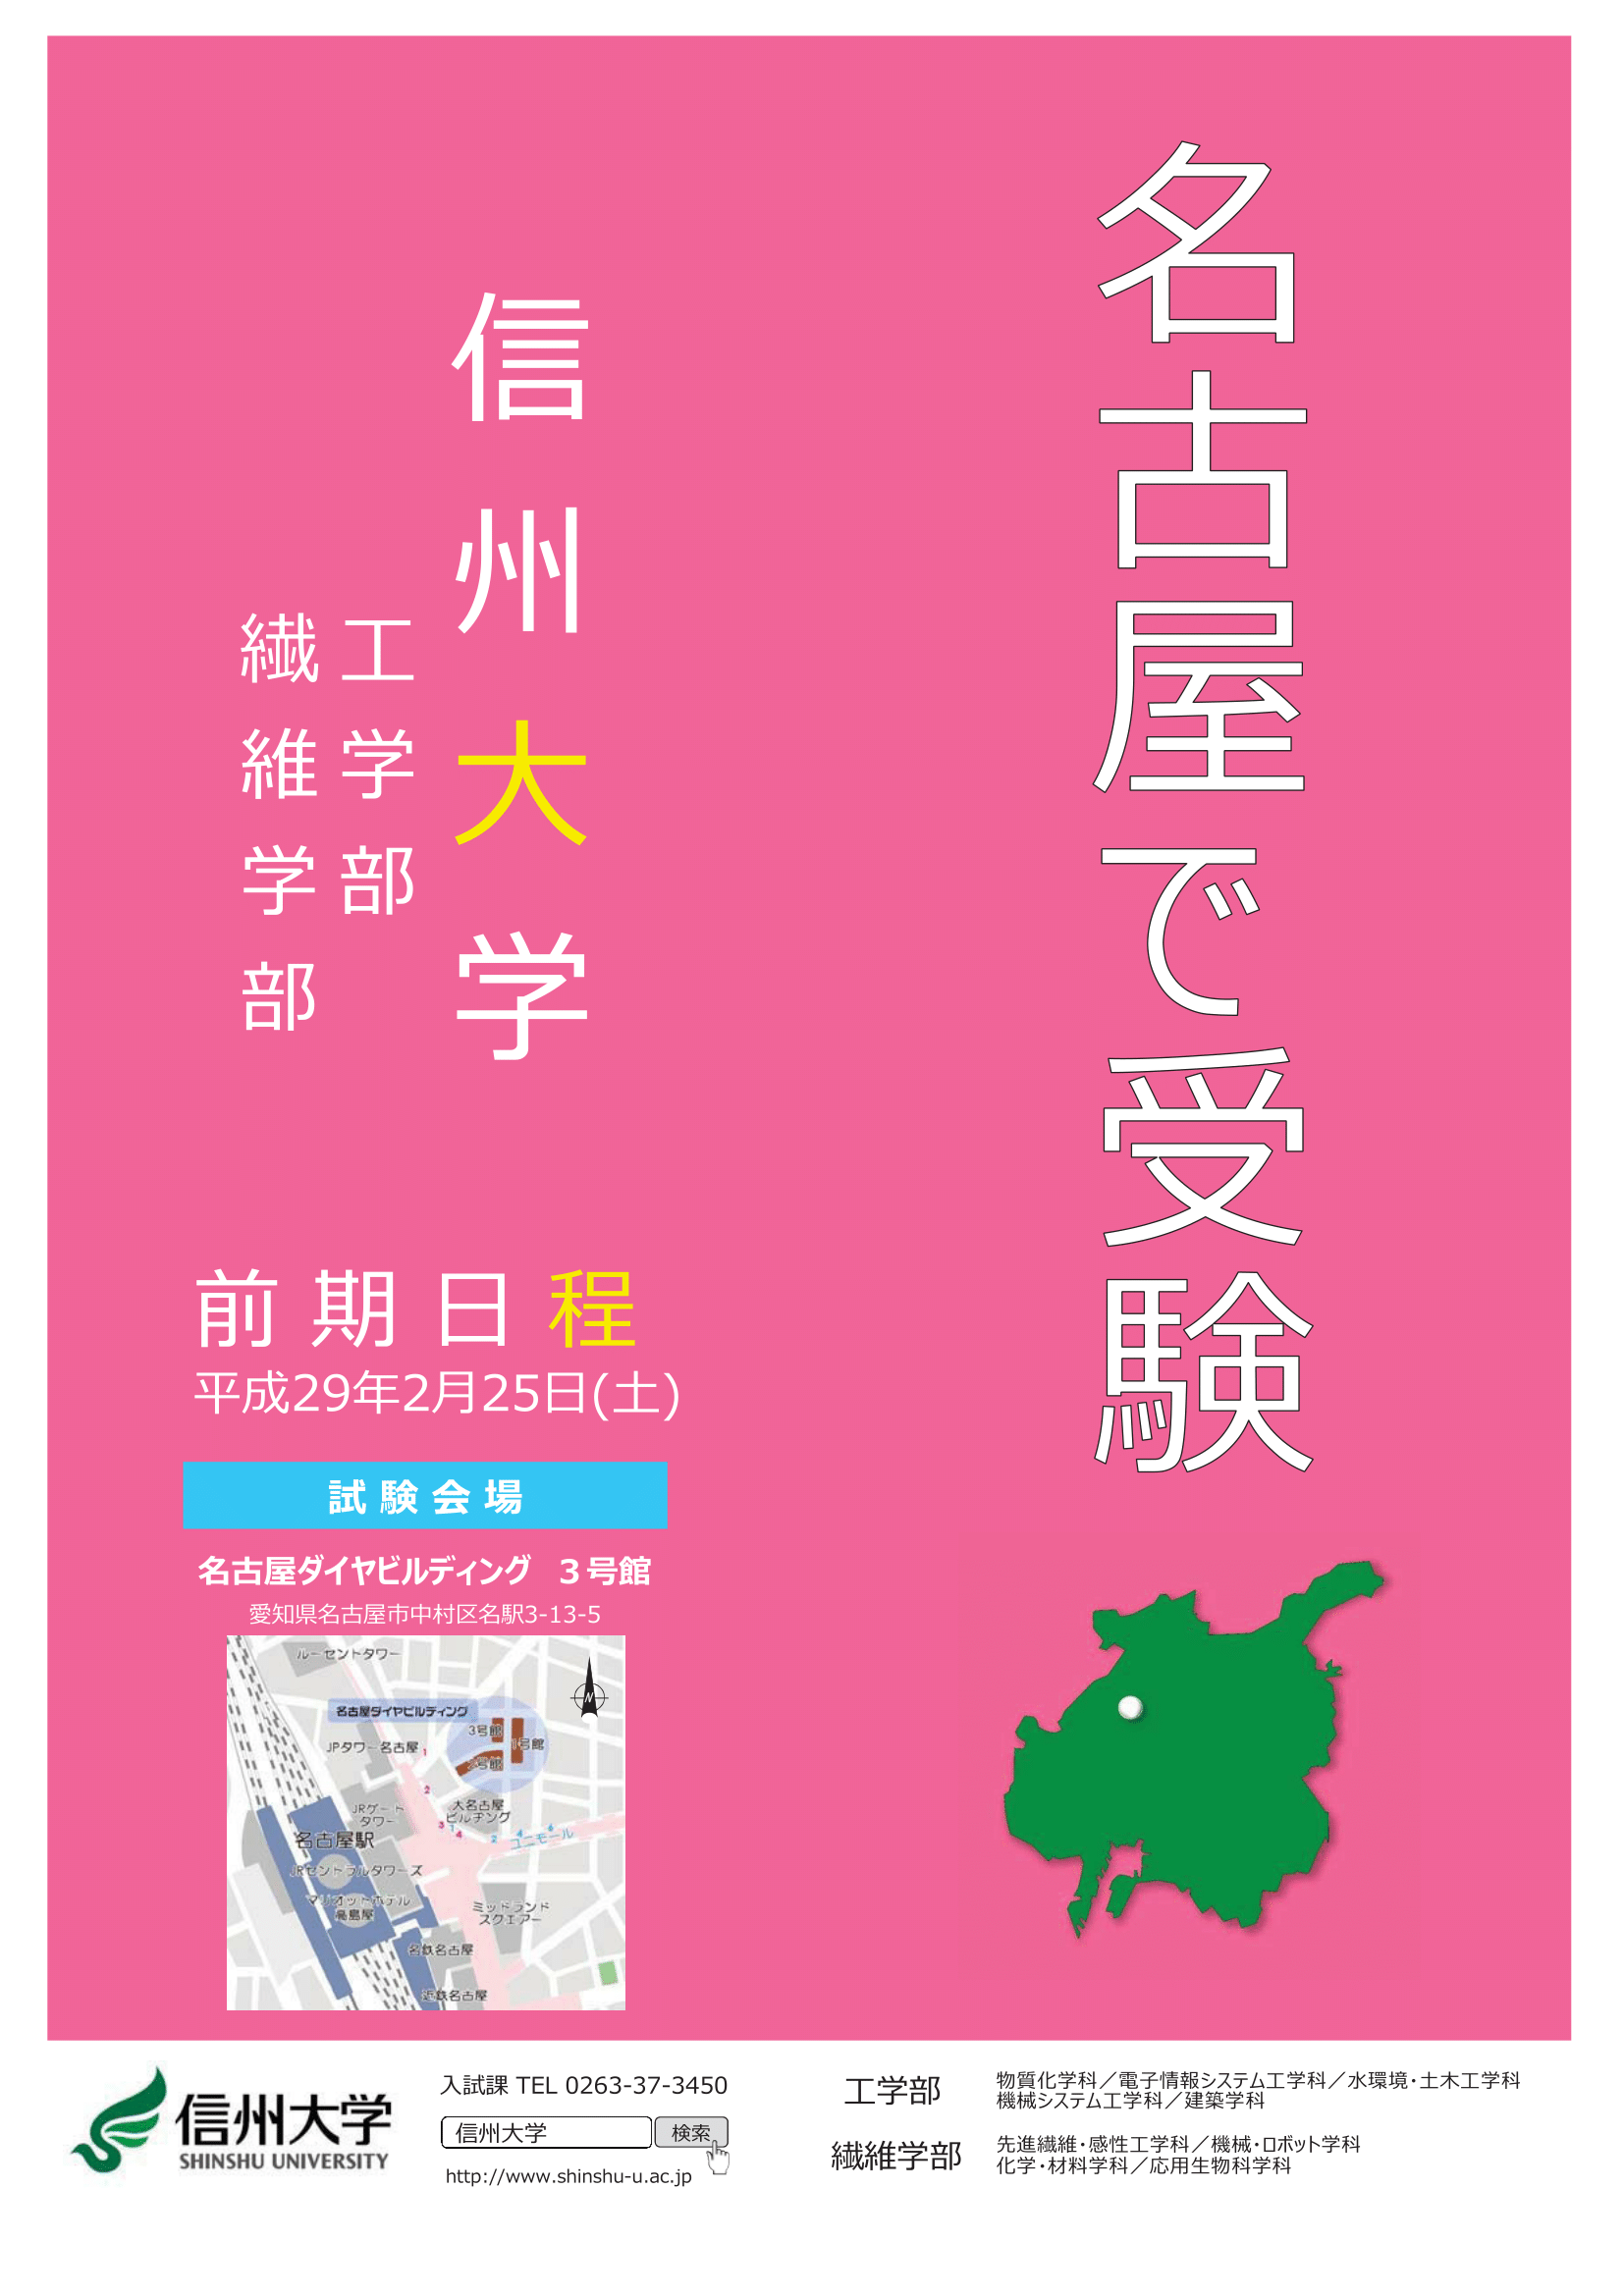 http://www.shinshu-u.ac.jp/faculty/textiles/news/H29nagoya-1.png